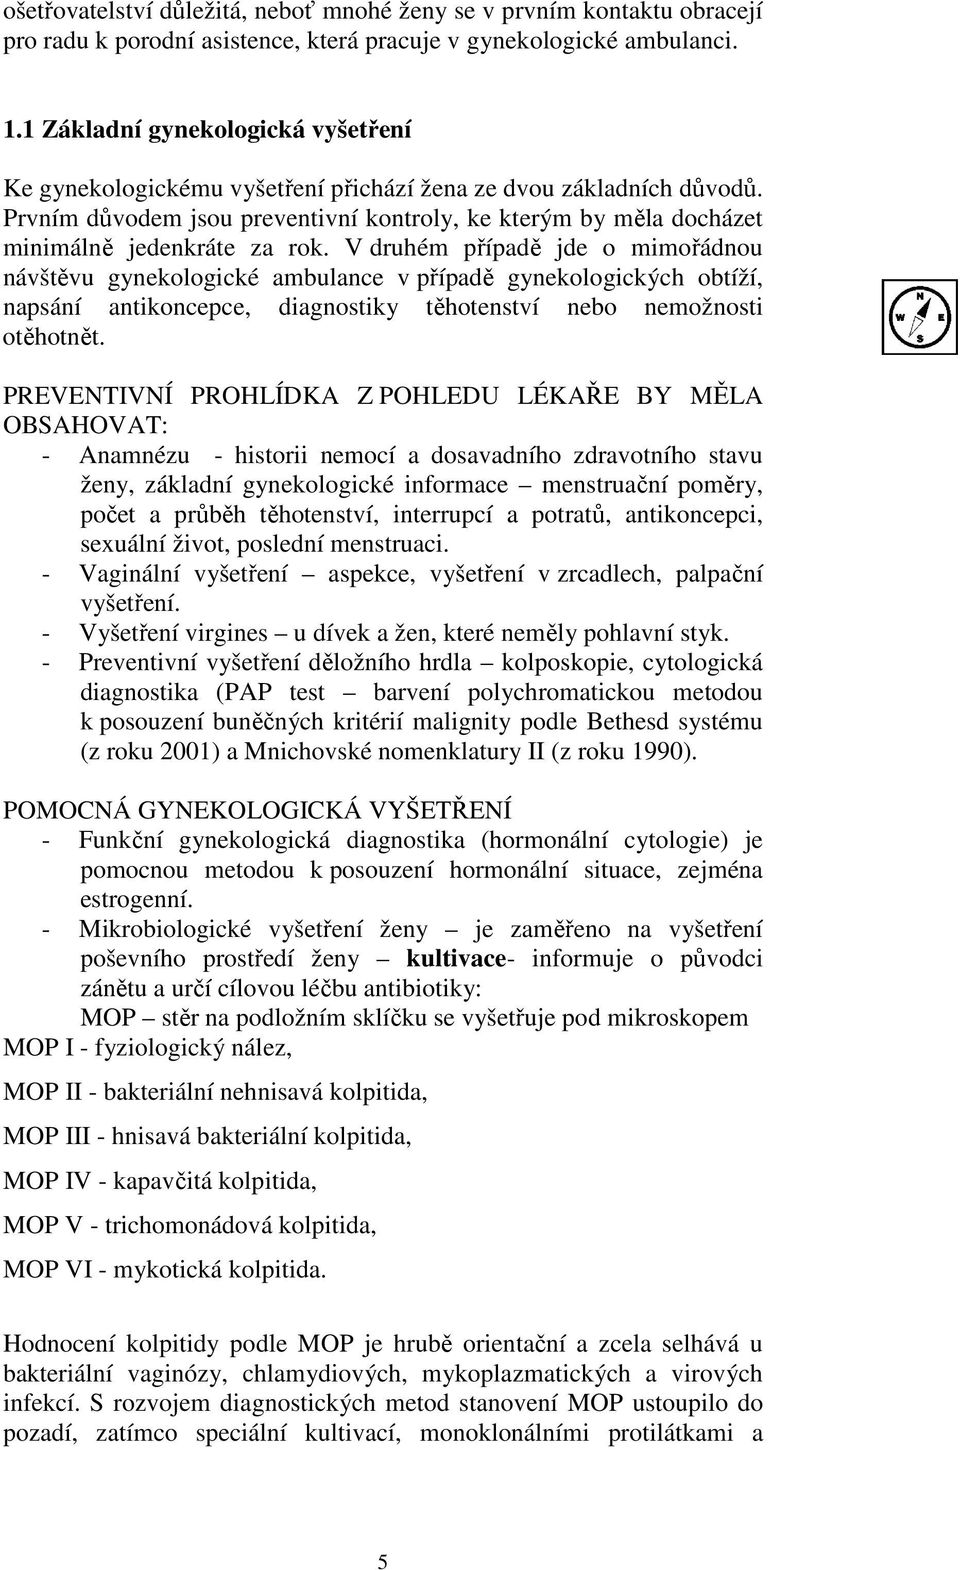 Studijní opora Komunitní ošetřovatelská péče v gynekologii Yvetta Vrublová  - PDF Stažení zdarma